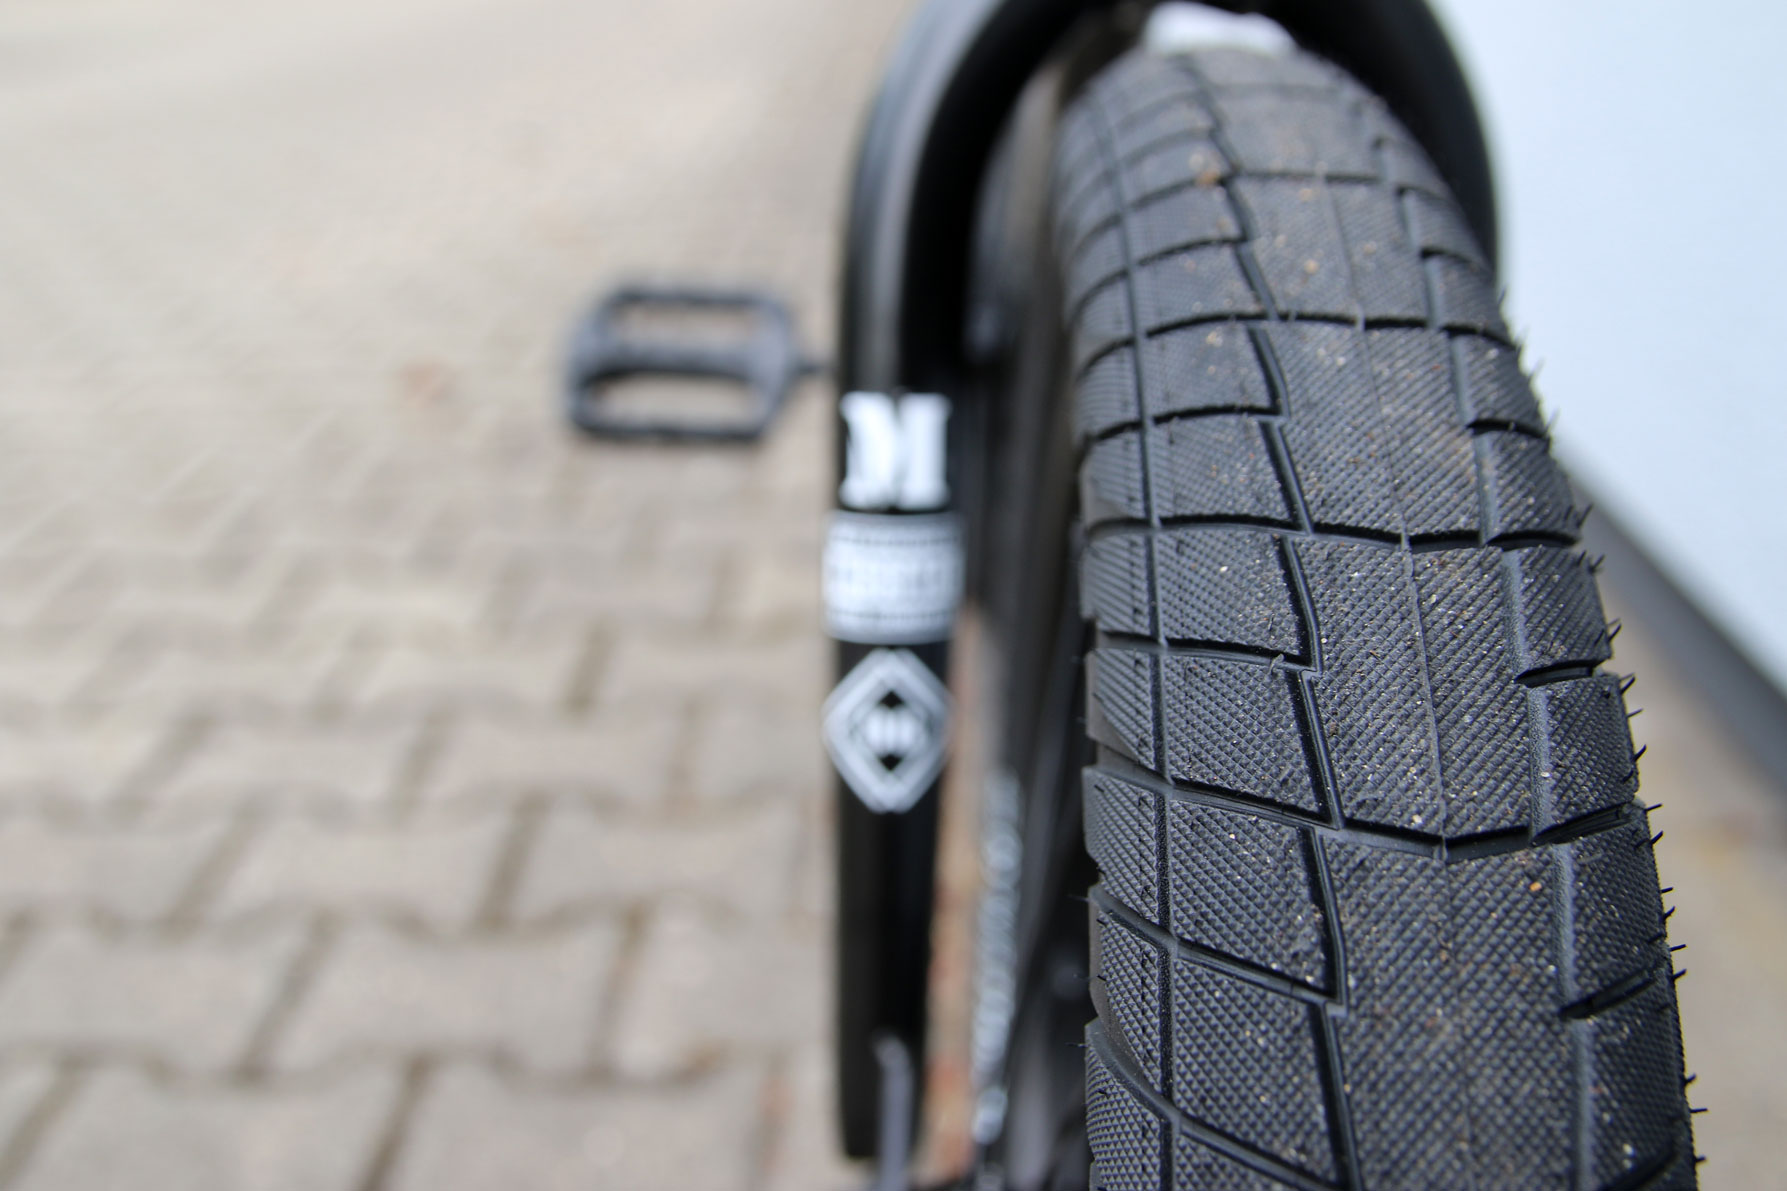 2.35 bmx tires